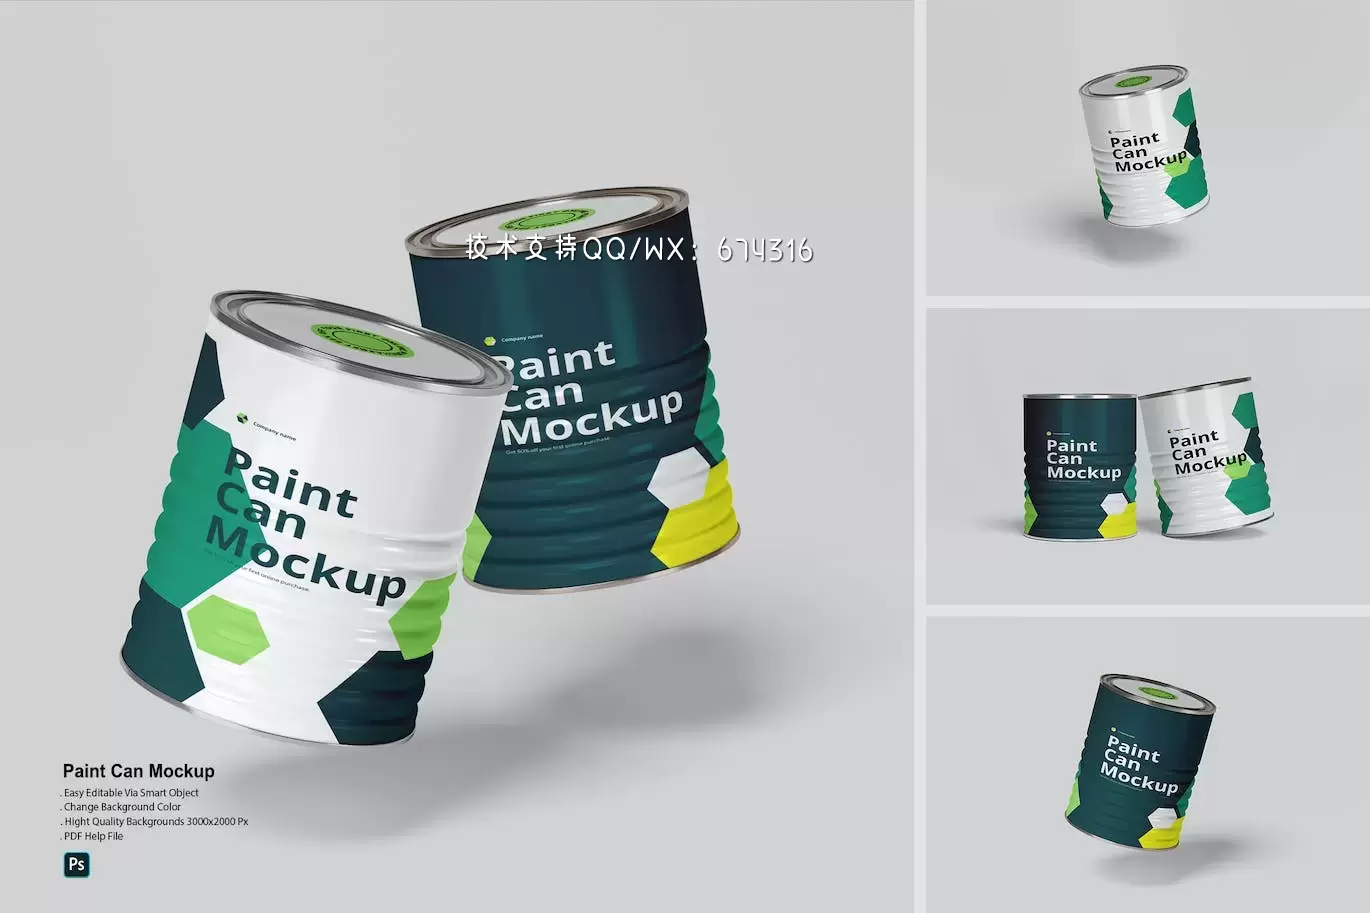 油漆罐/桶包装设计样机 (PDF,PSD)免费下载